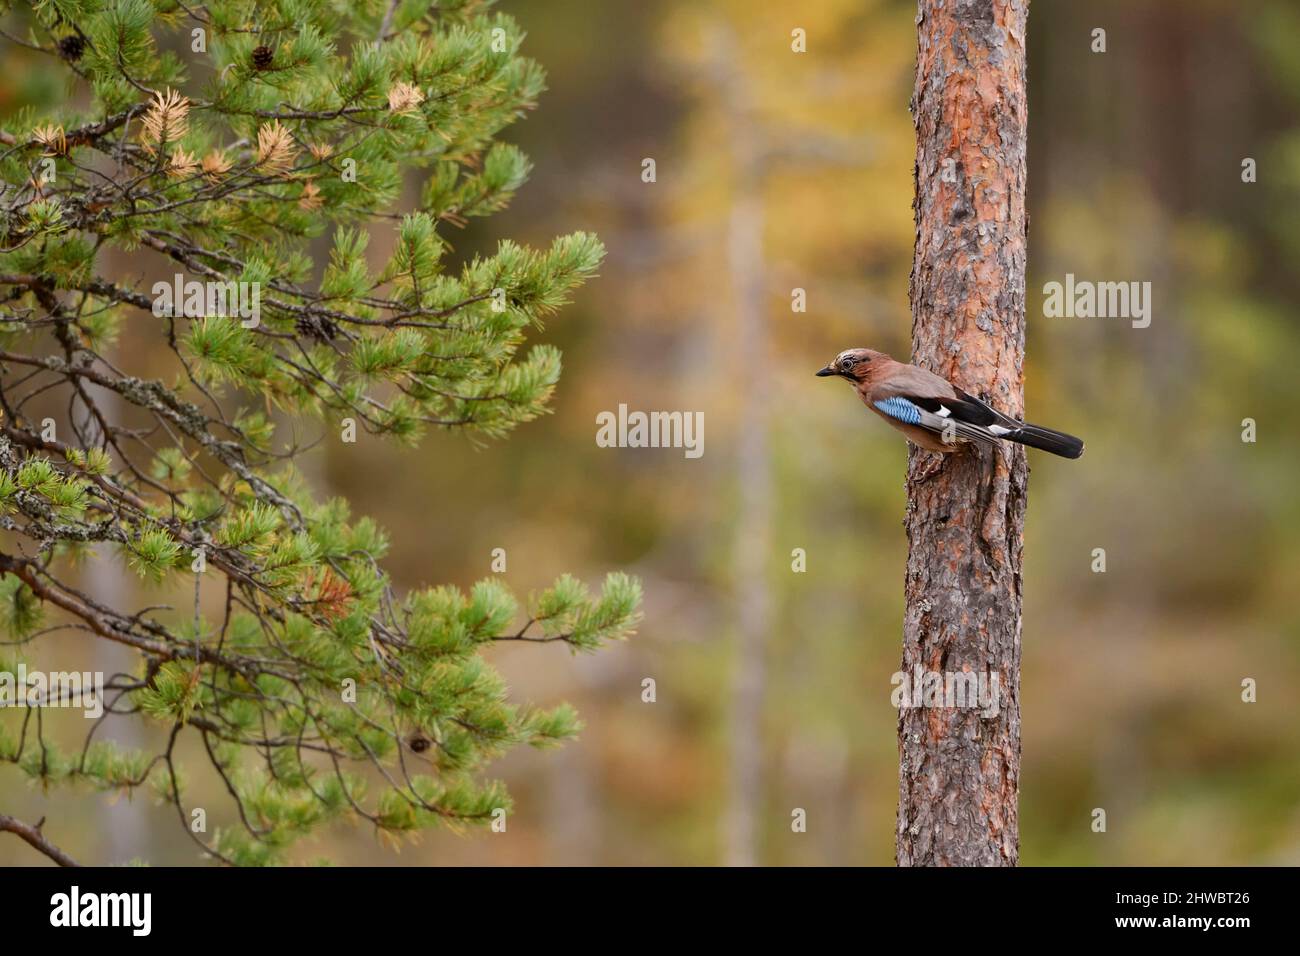 Geai eurasien - Garrulus glandarius, grand oiseau de perchage coloré des forêts et des terres boisées européennes, Finlande. Banque D'Images